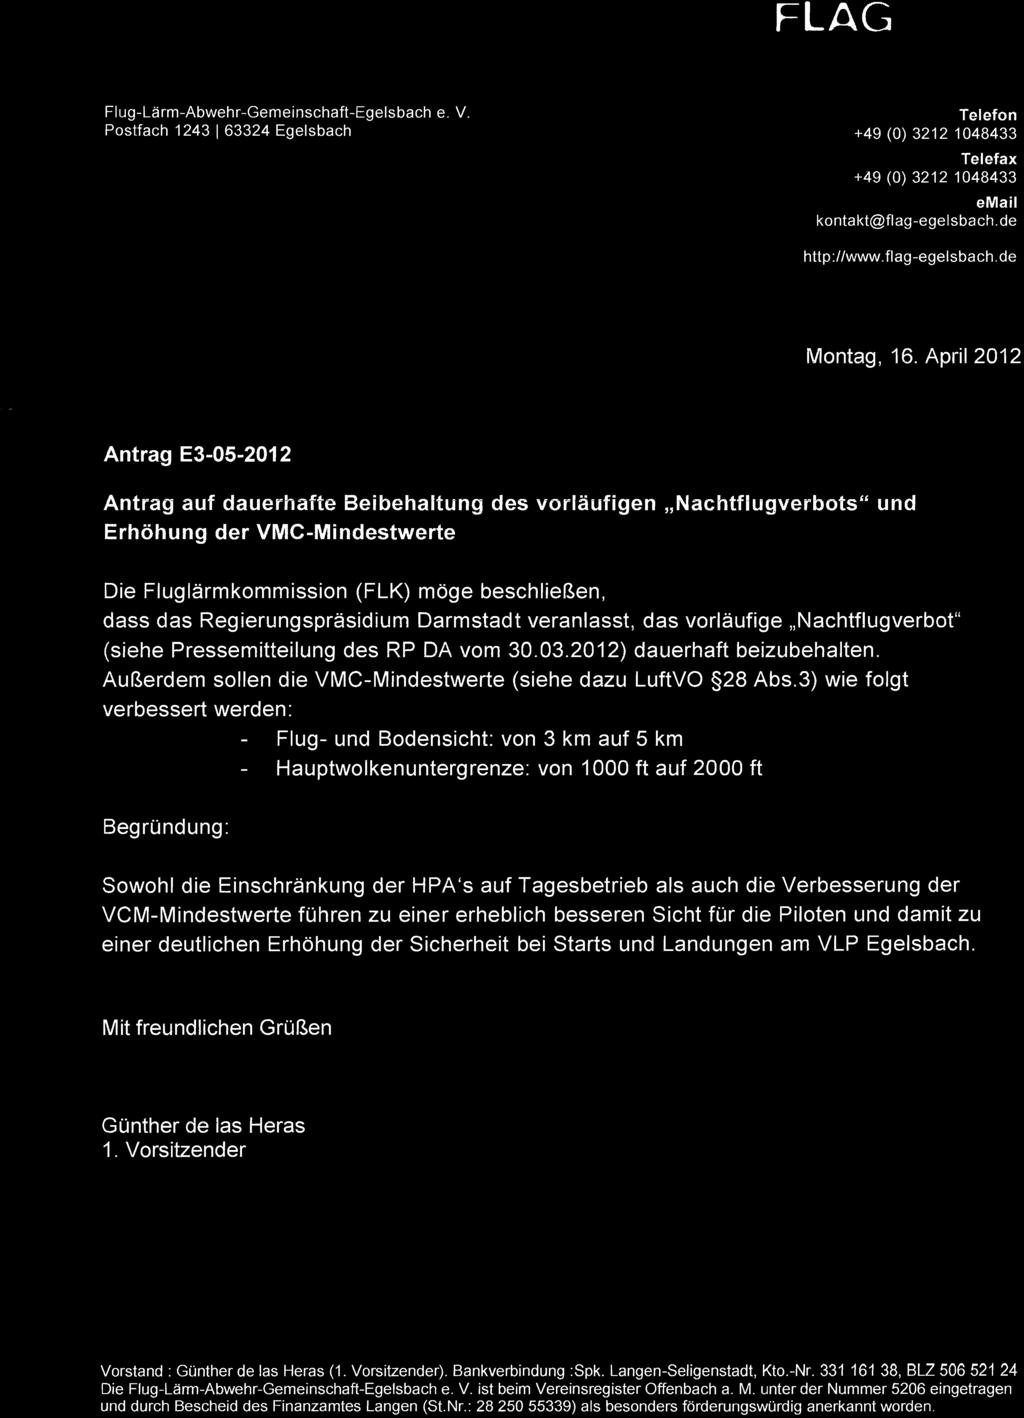 Regierungspräsidium Darmstadt veranlasst, das vorläufige "Nachtflugverbot" (siehe Pressemitteilung des RP DA vom 30.03.2012) dauerhaft beizubehalten.